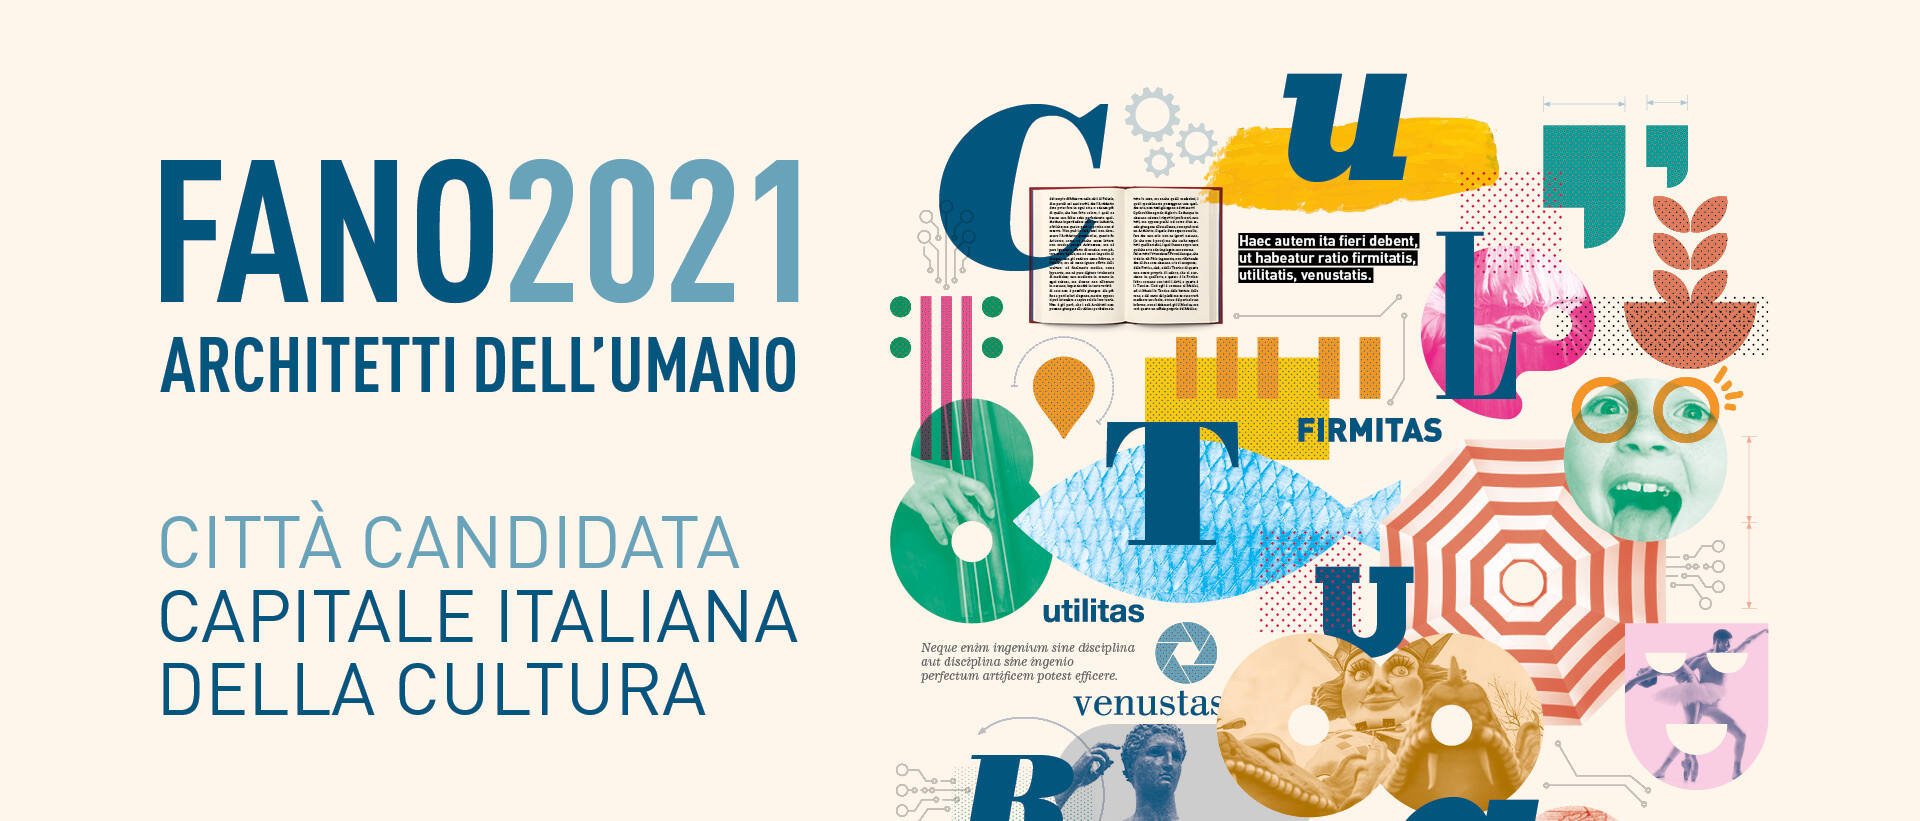 Fano candidata Capitale Italiana della Cultura 2021